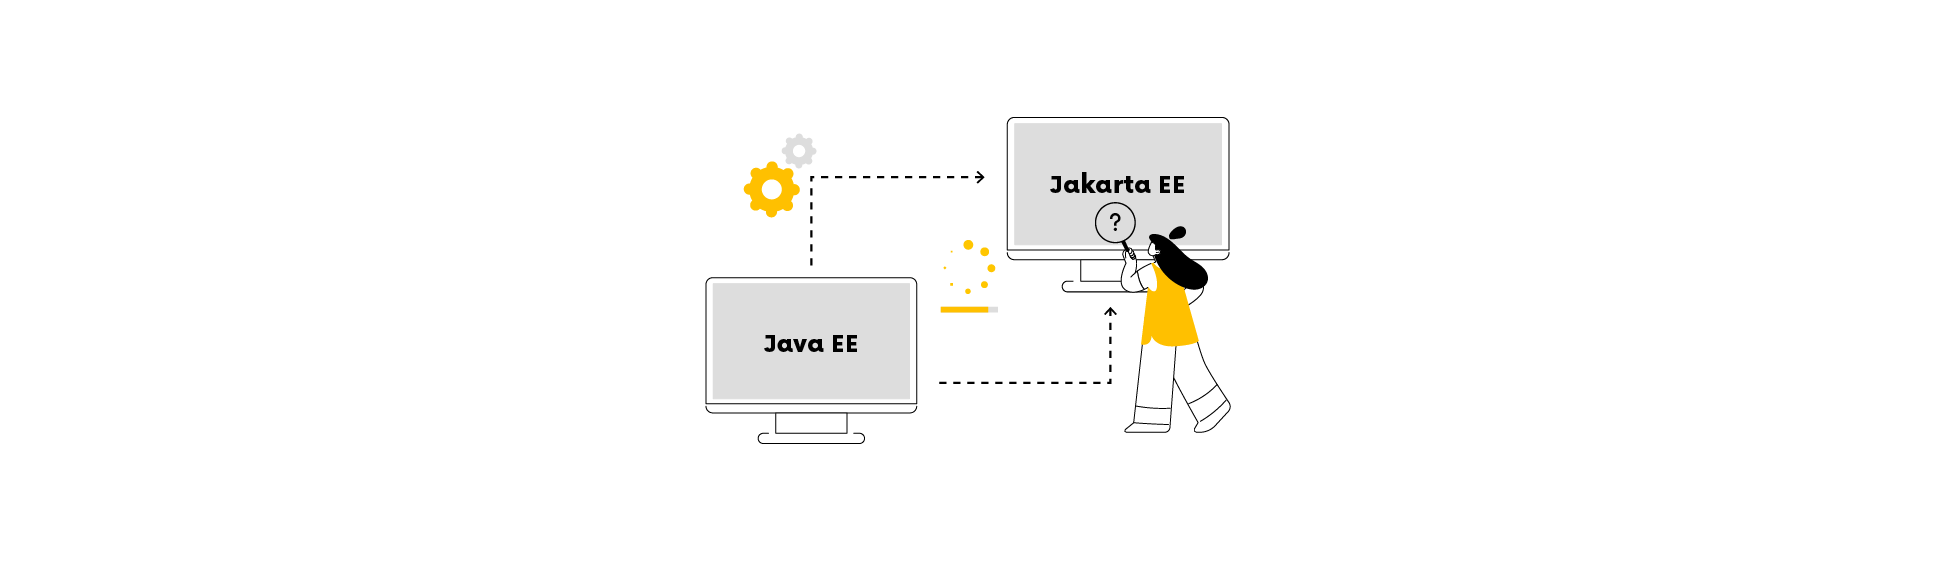 Java EE vs Jakarta EE